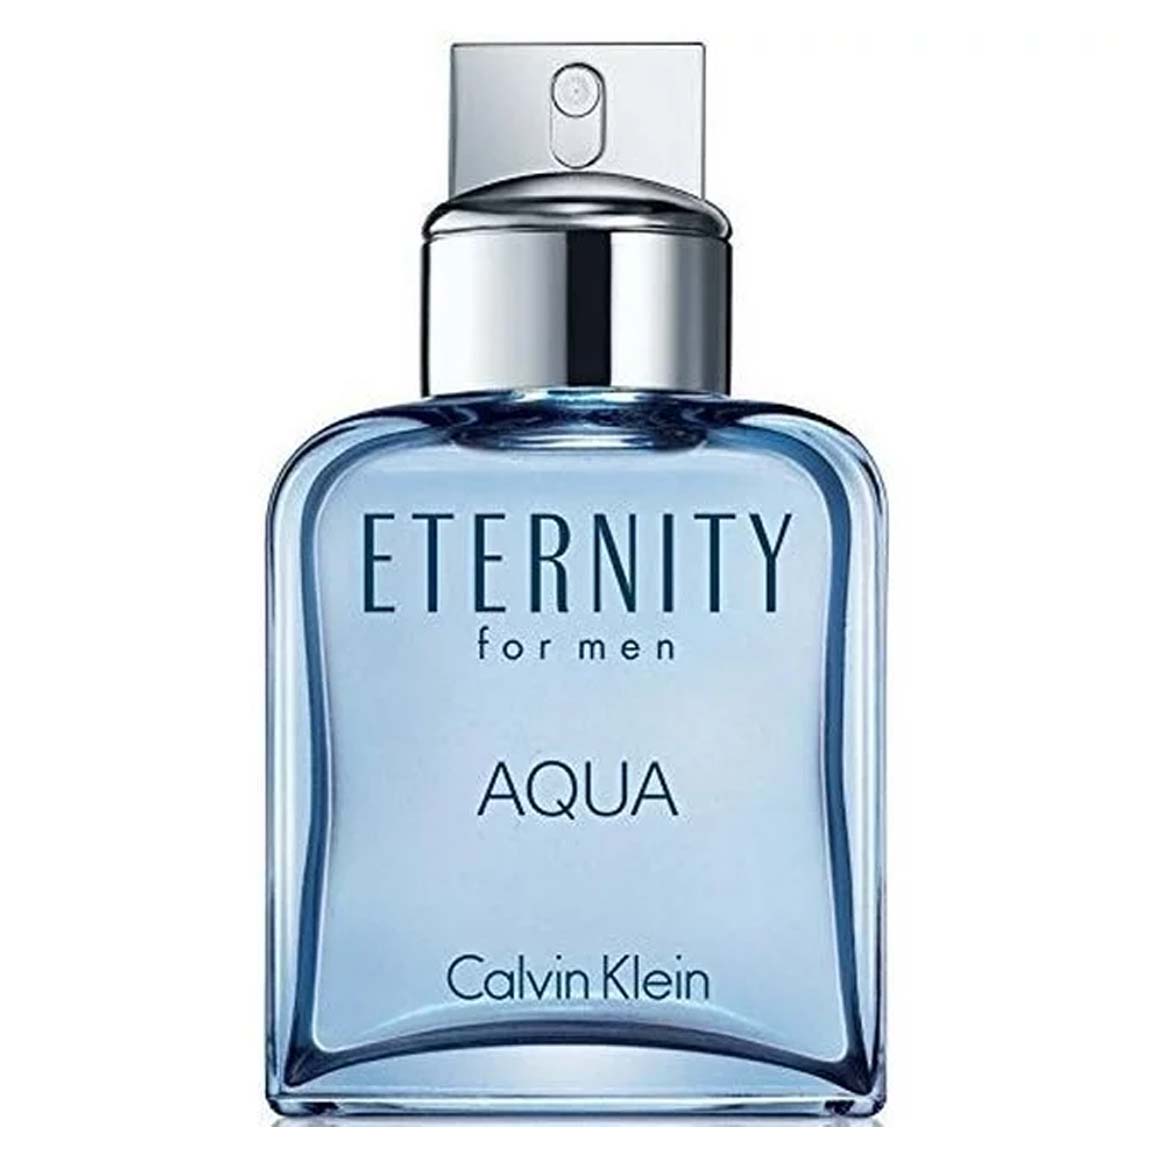 Calvin Klein Eternity Aqua Eau De Toilette Spray